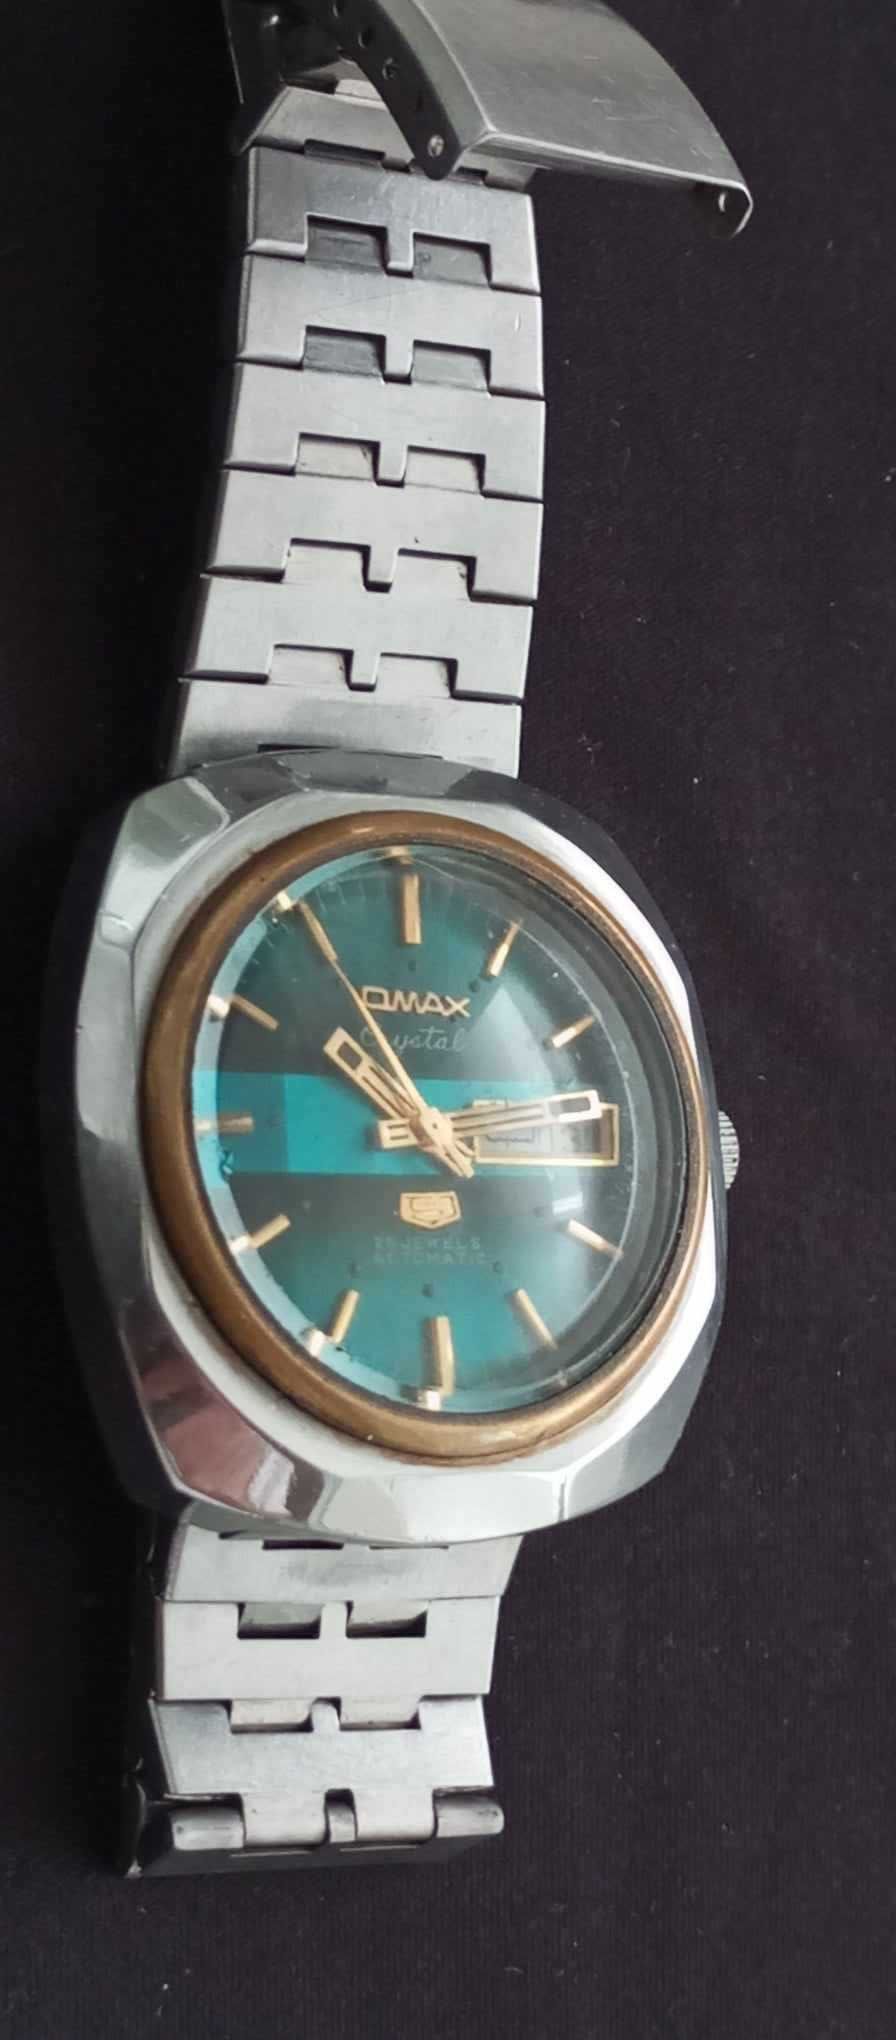 Relógio vintage Omax automático